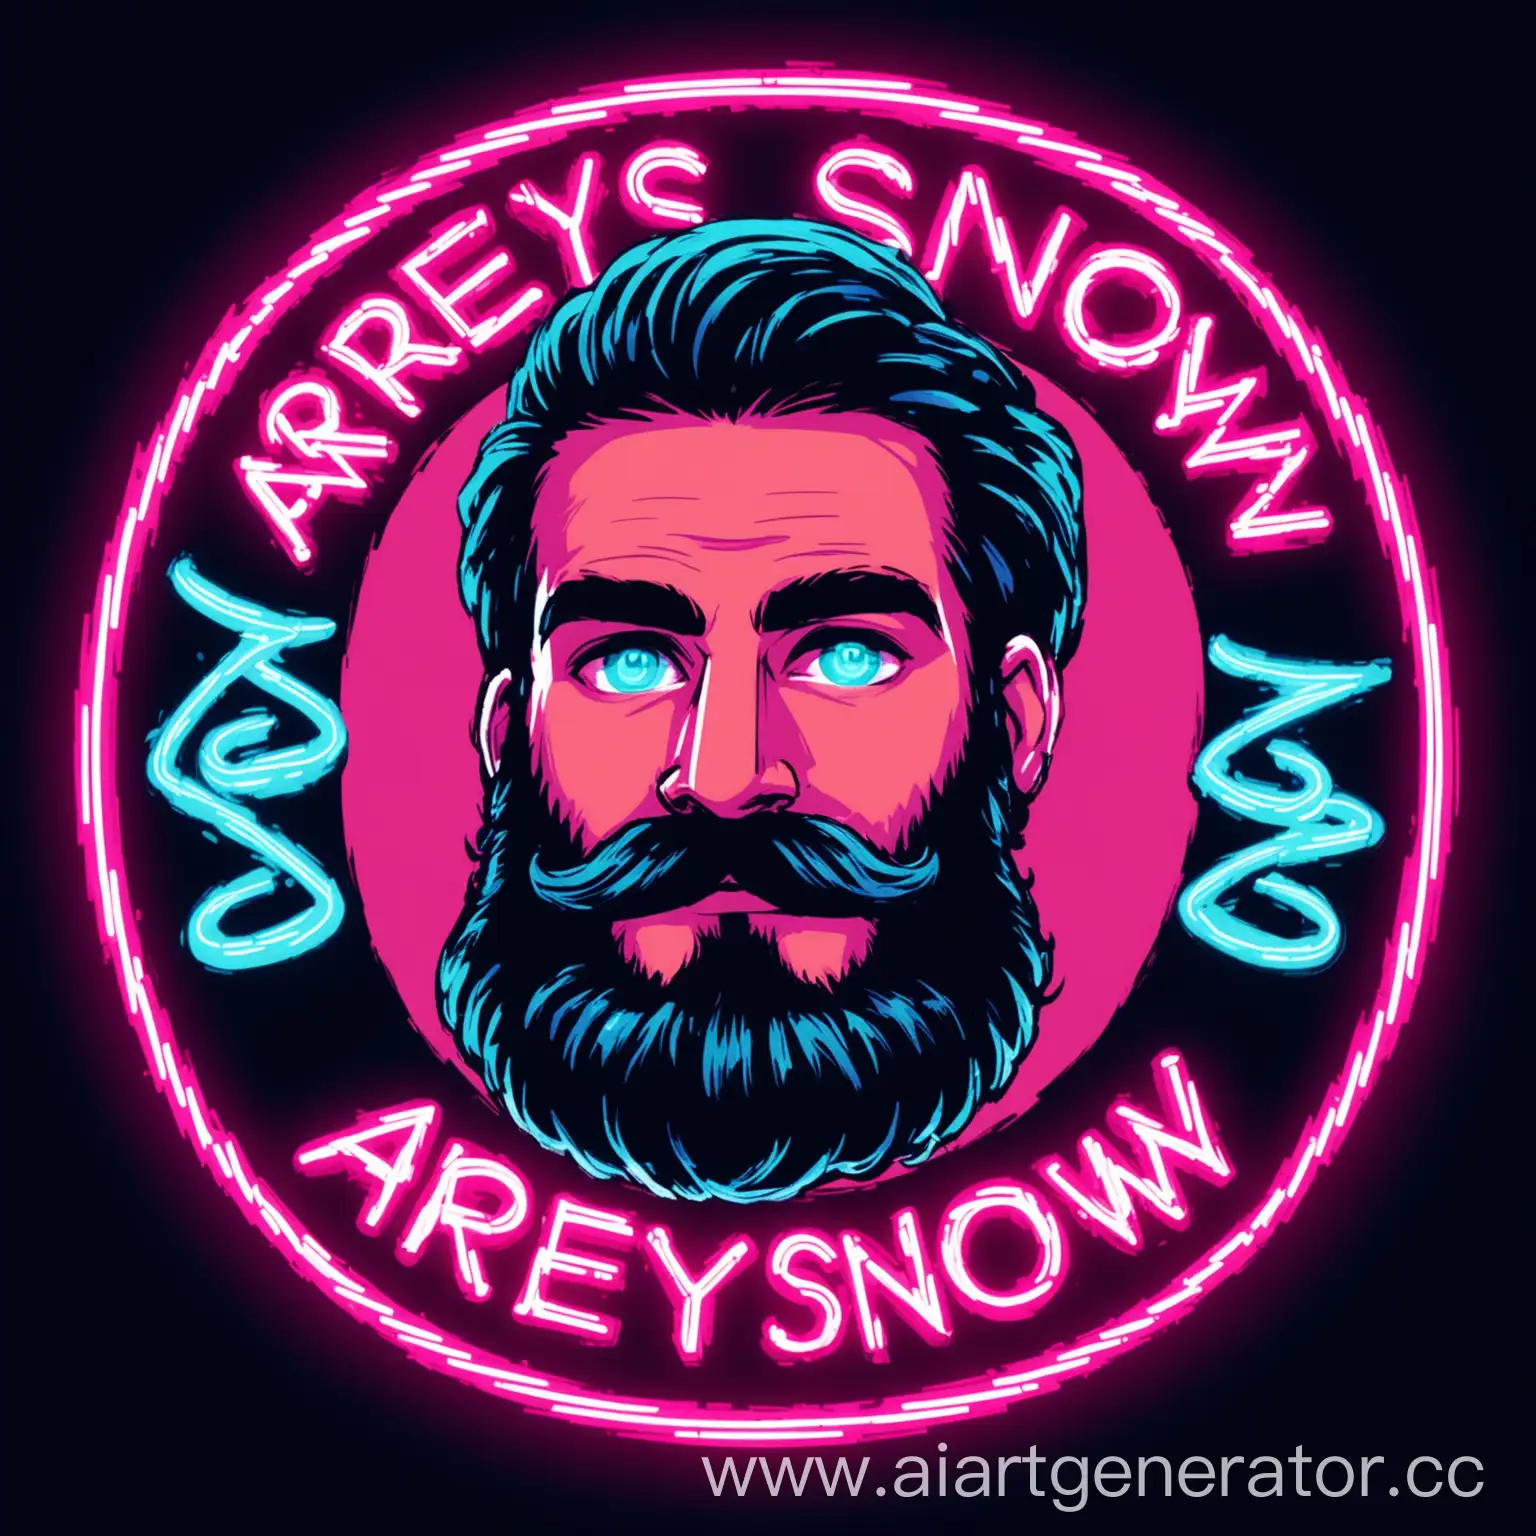 Круглый логотип, лицо молодого бородатого мужчины с закрученными усами, в неоне, надпись "AreySnow" снизу